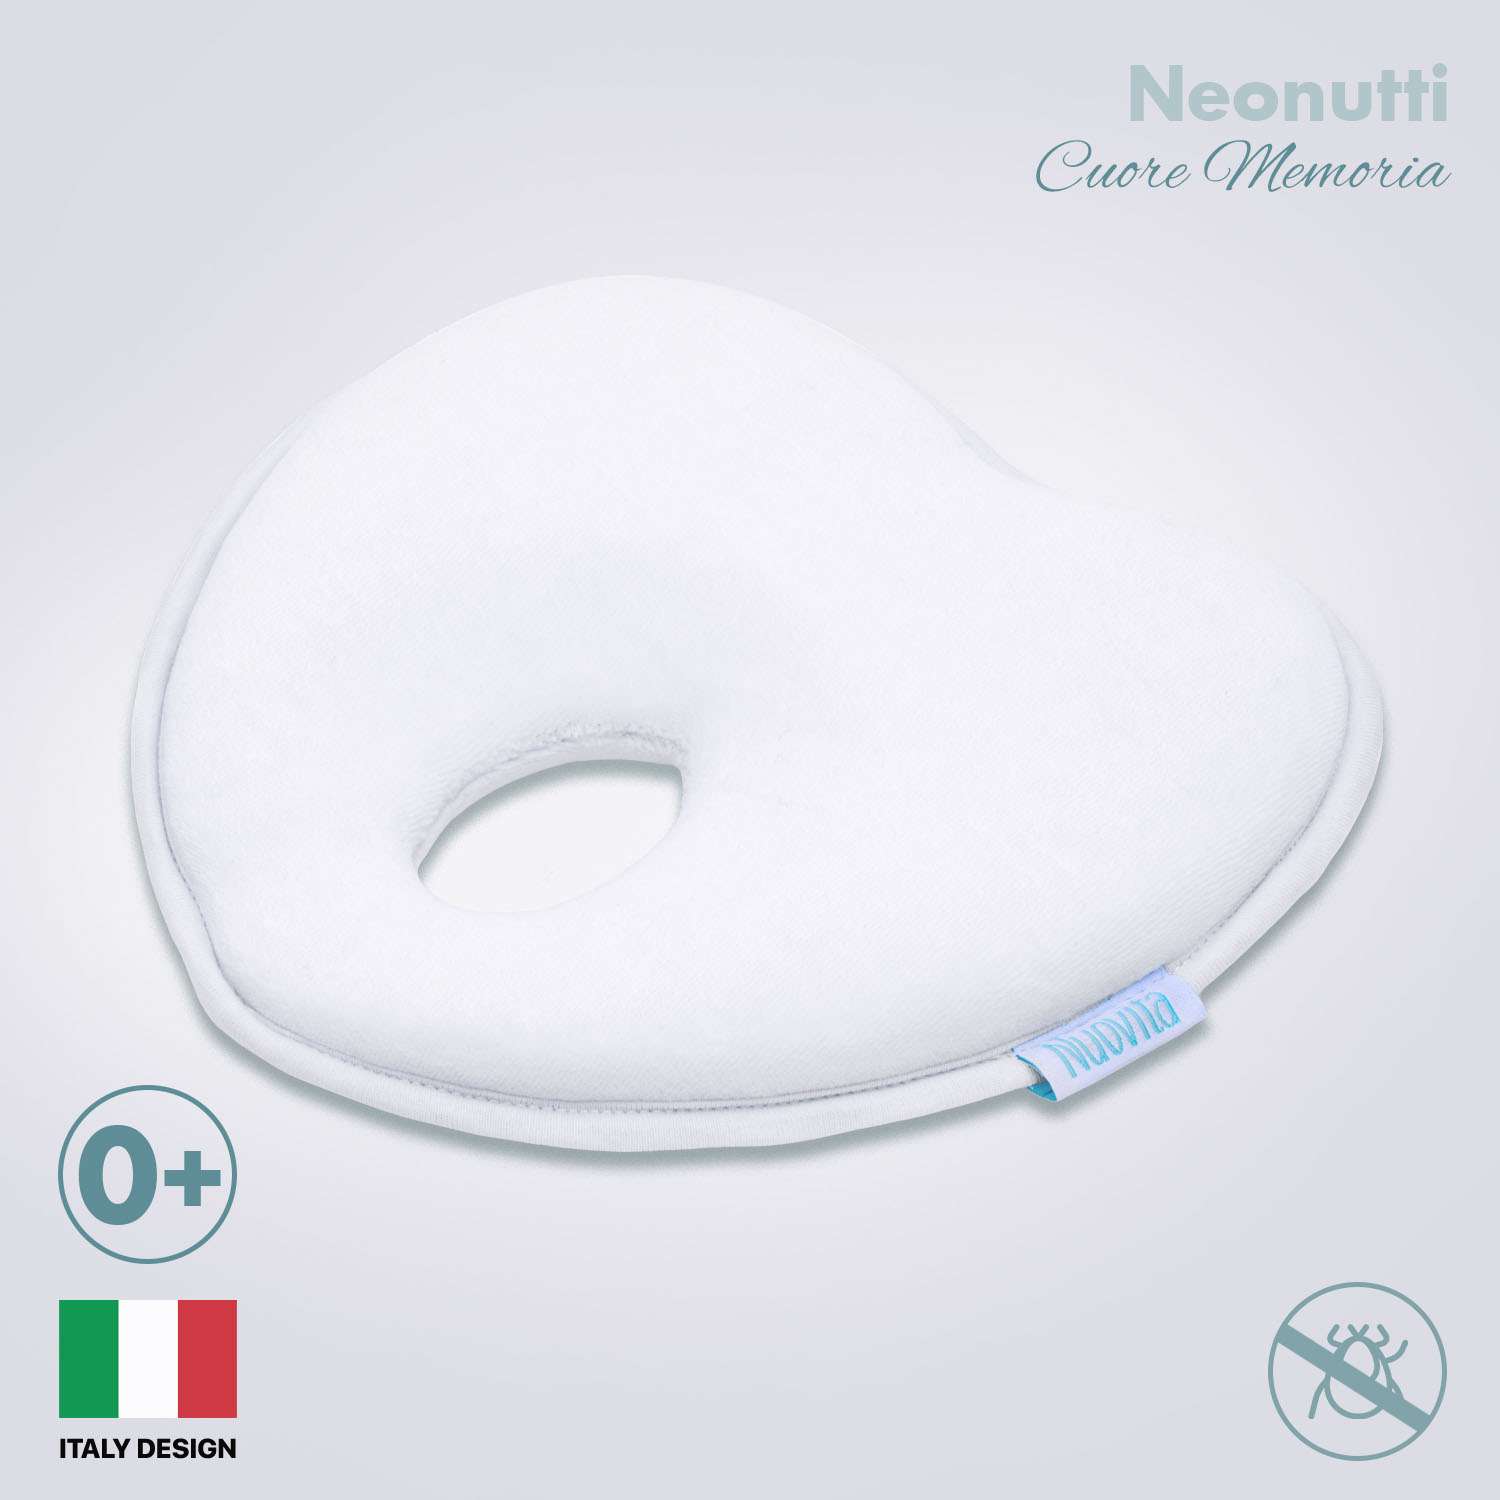 Подушка для новорожденного Nuovita NEONUTTI Cuore Memoria белый - фото 2